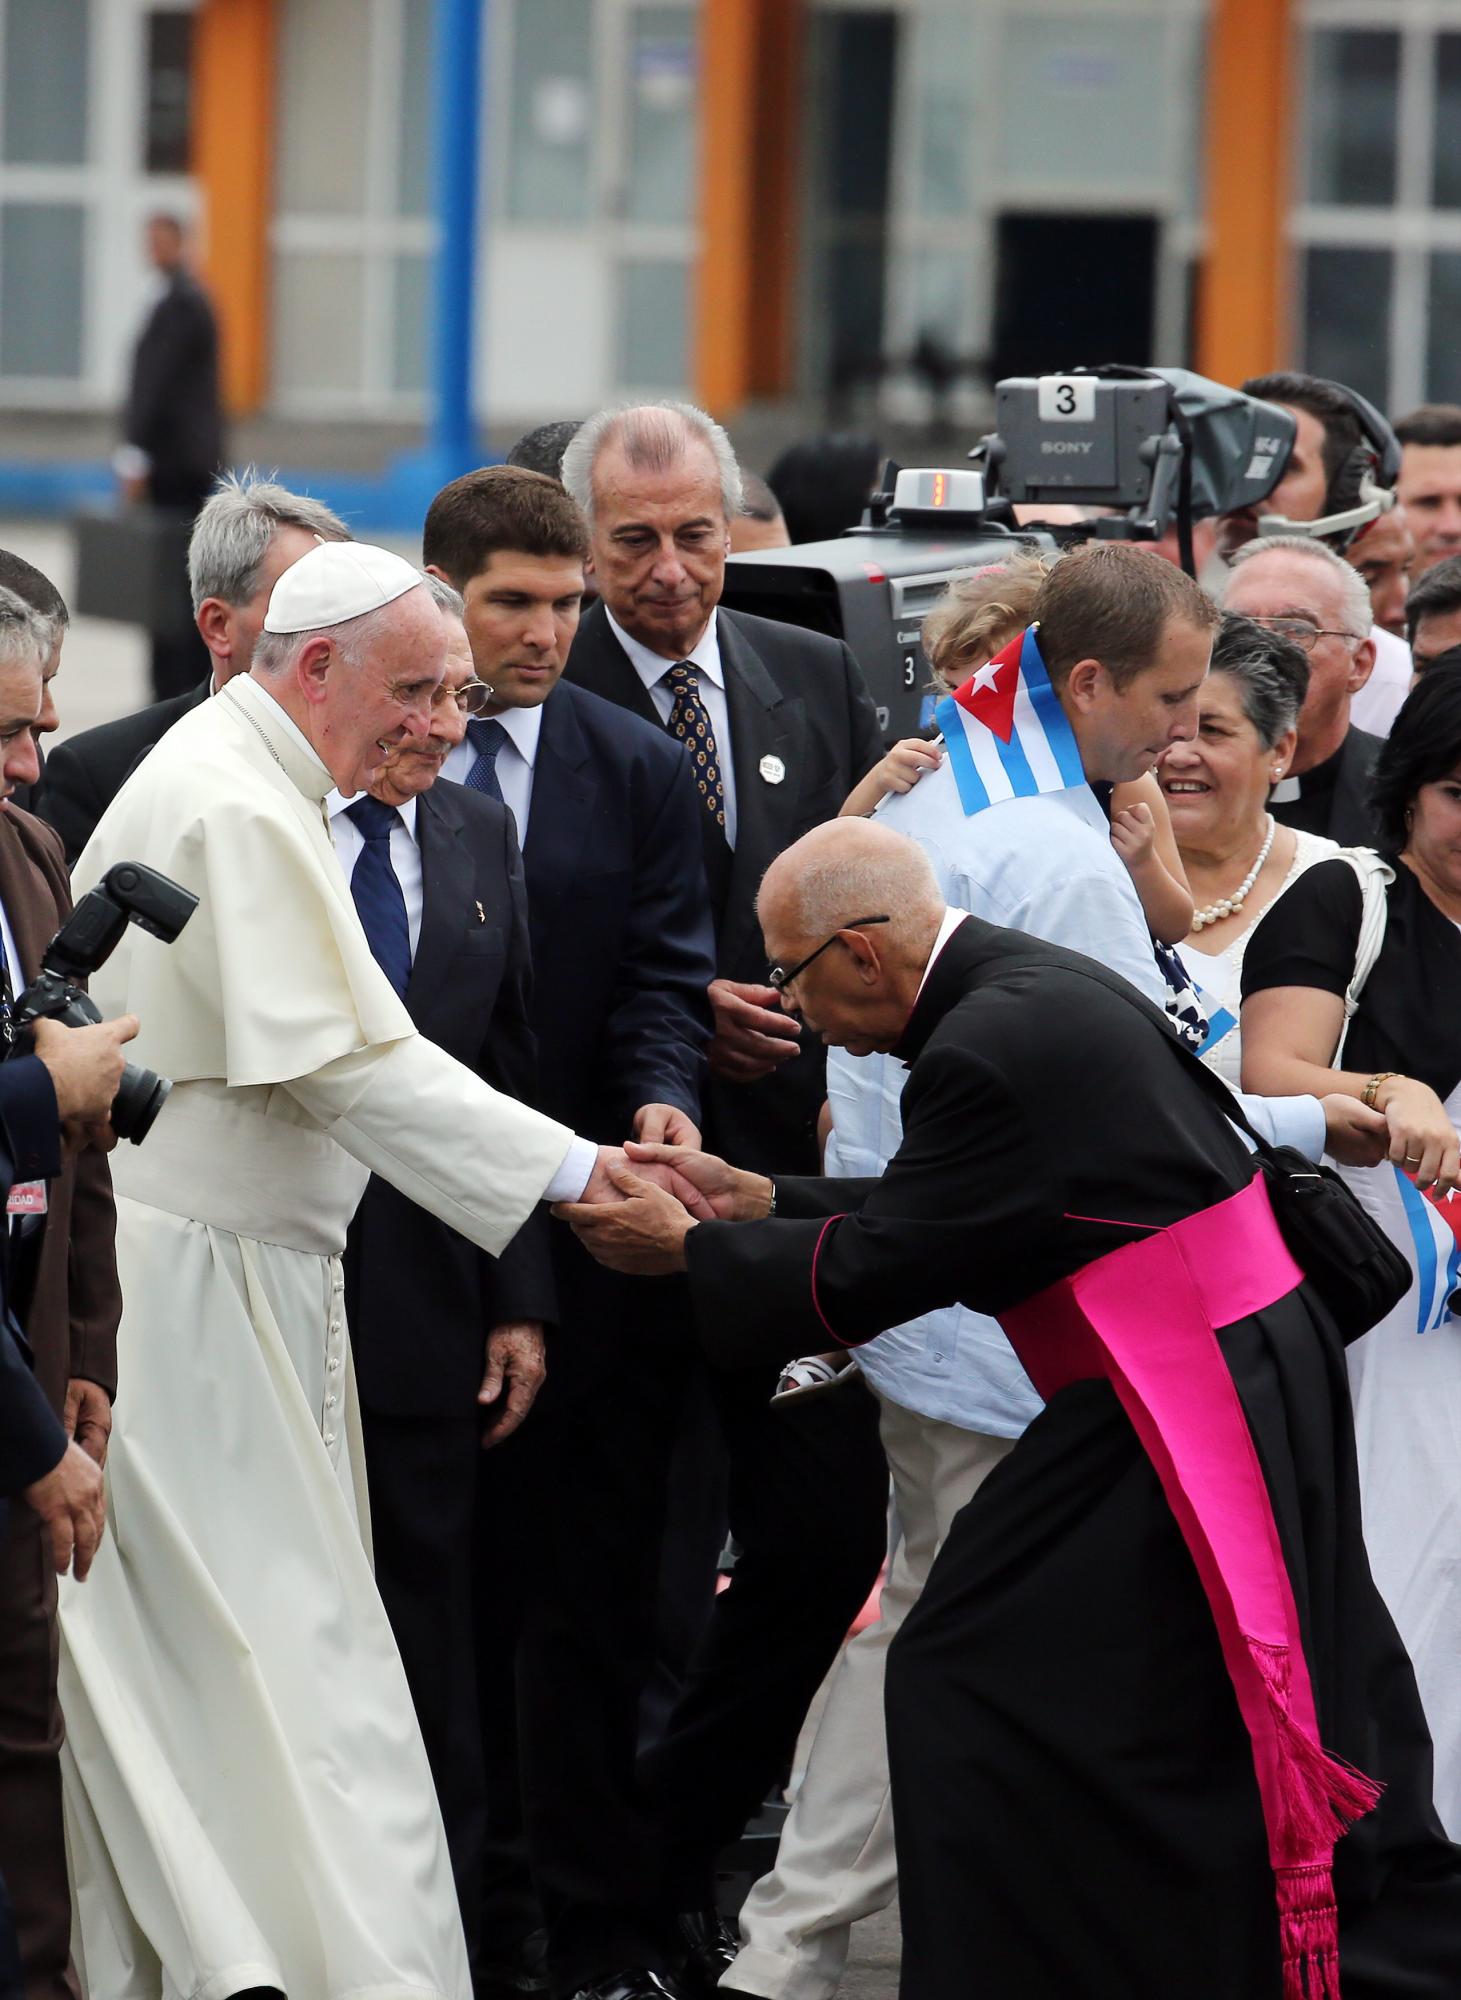 El Papa Francisco saluda a un obispo junto al presidente de Cuba, Raúl Castro.